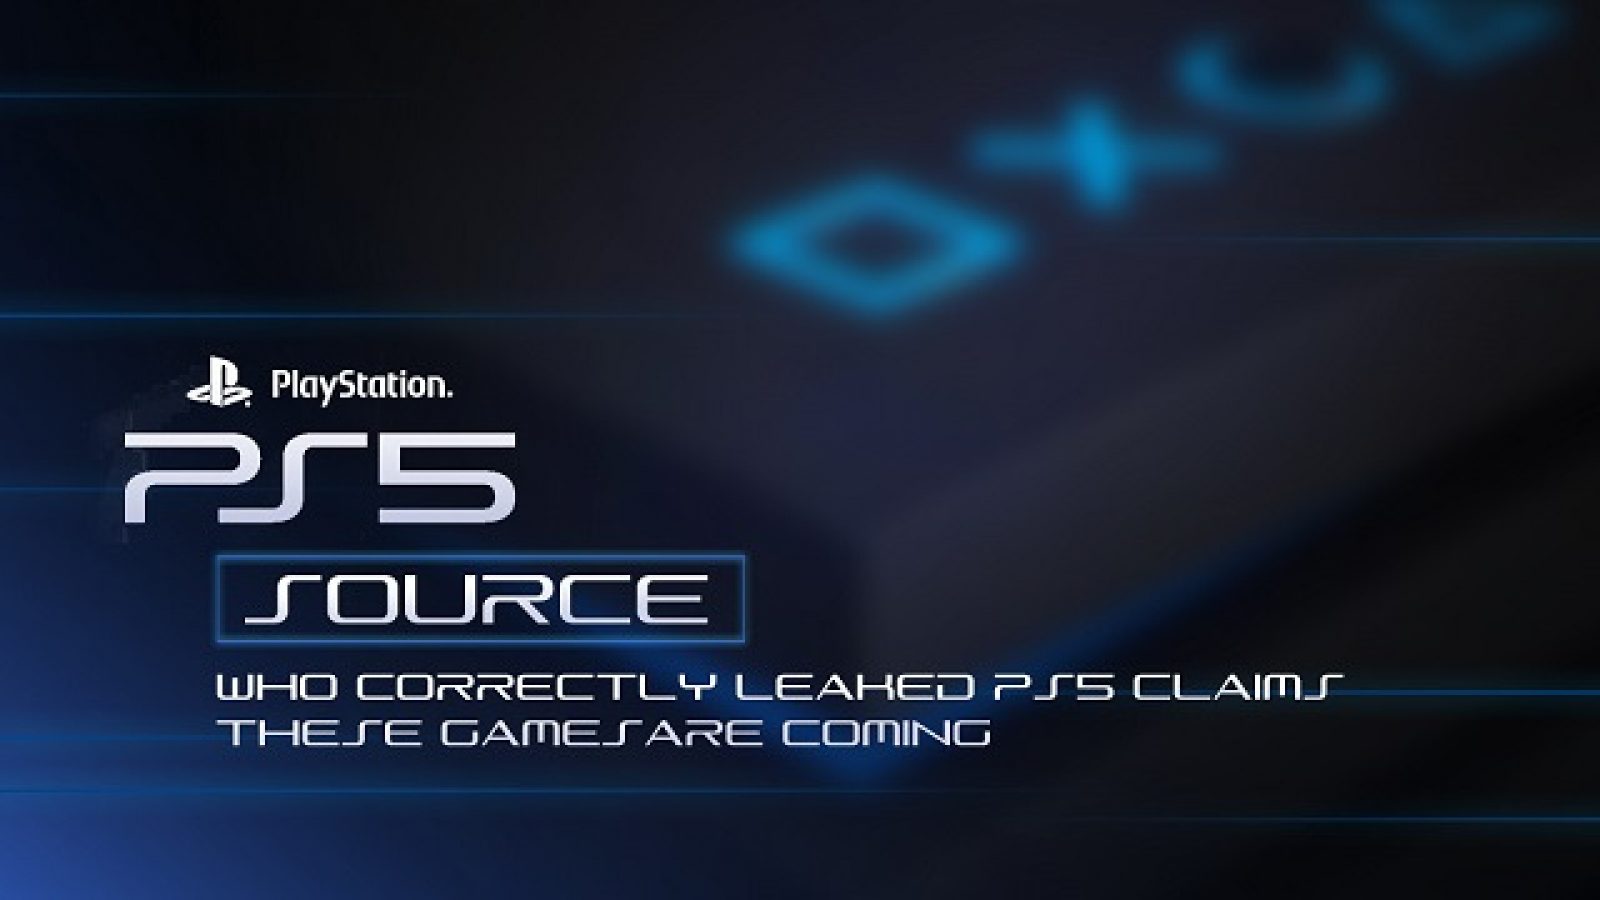 New PS5 update shuts down Cronus Zen support - Dexerto